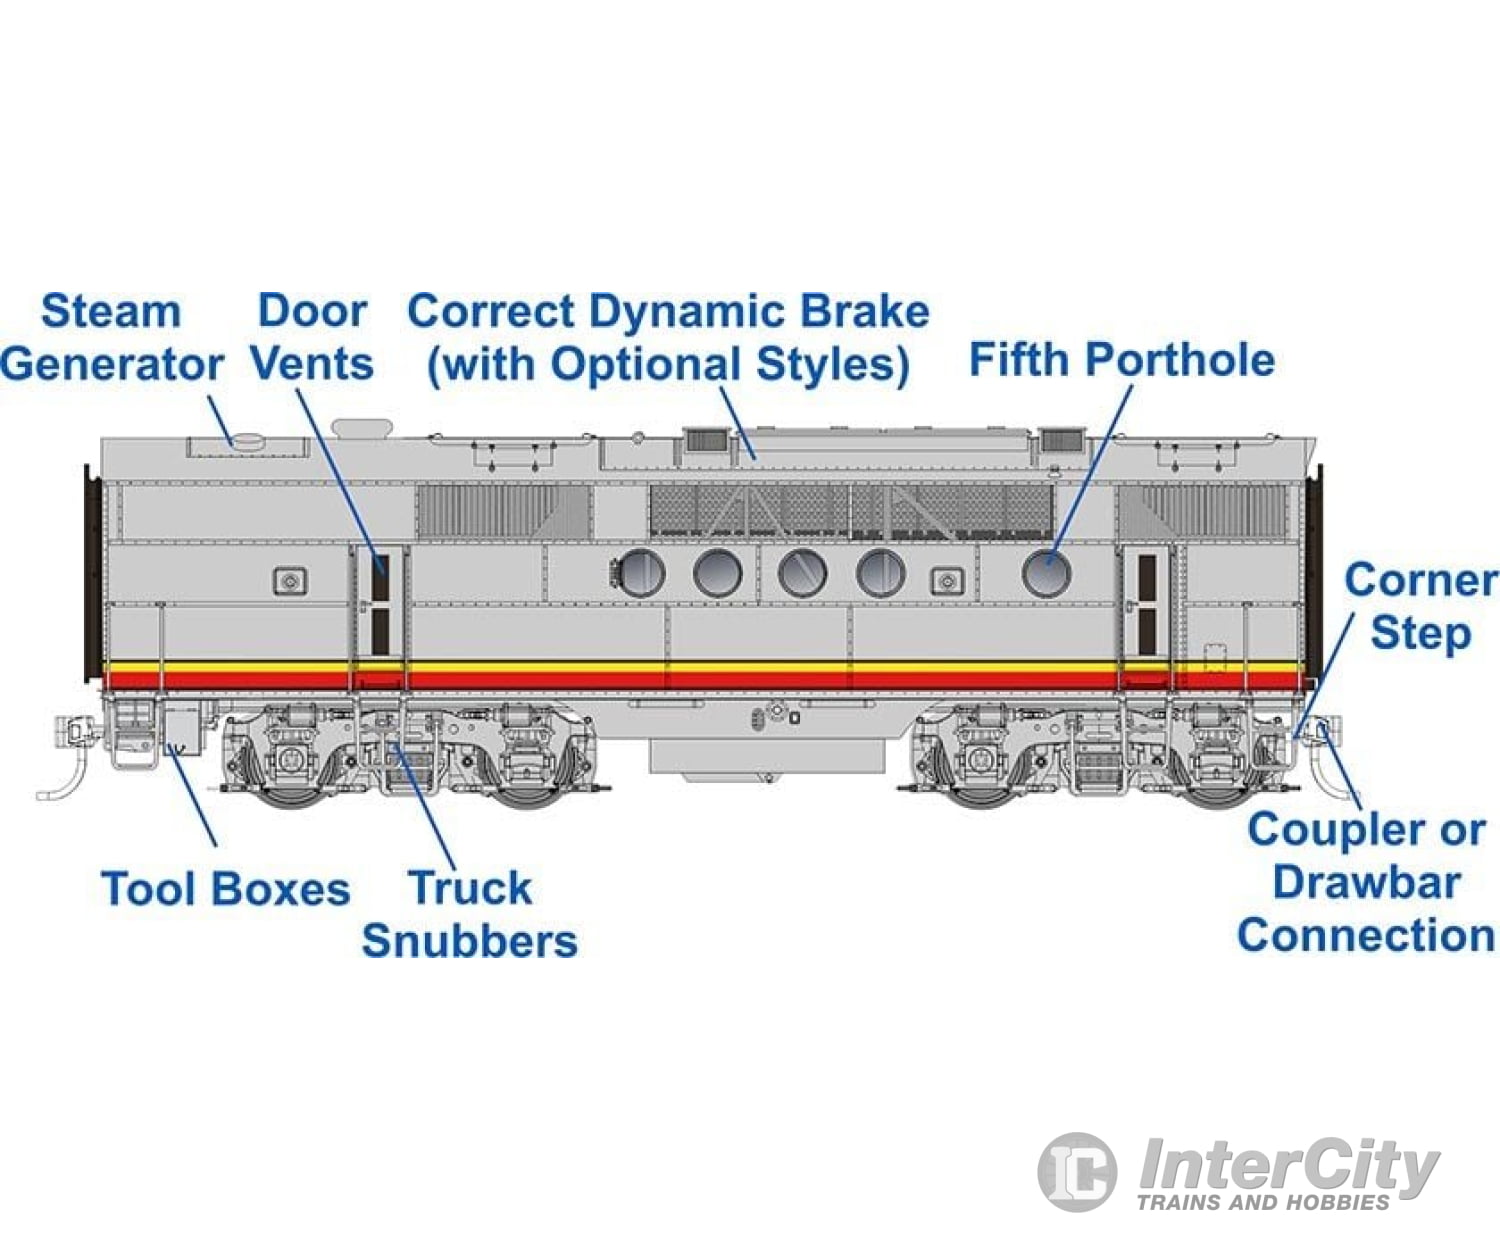 Rapido 053504 Ho Emd Ft Booster (Dc/Dcc/Sound): At&Sf - Passenger Scheme: Unnumbered Locomotives